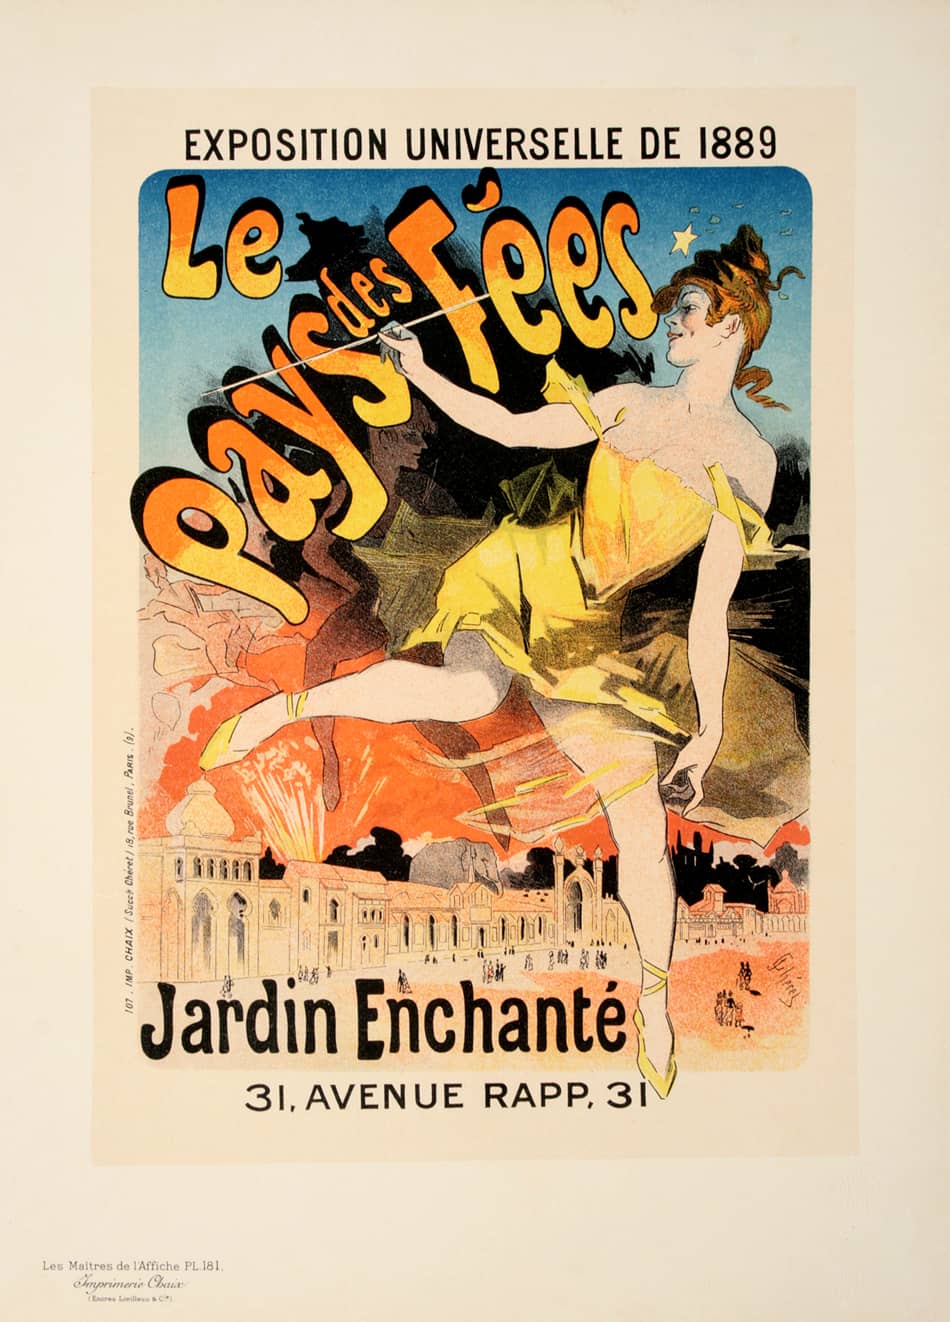 Original Maitres de L'Affiche Poster PL 181 by Jules Cheret - Le Pays des Fees